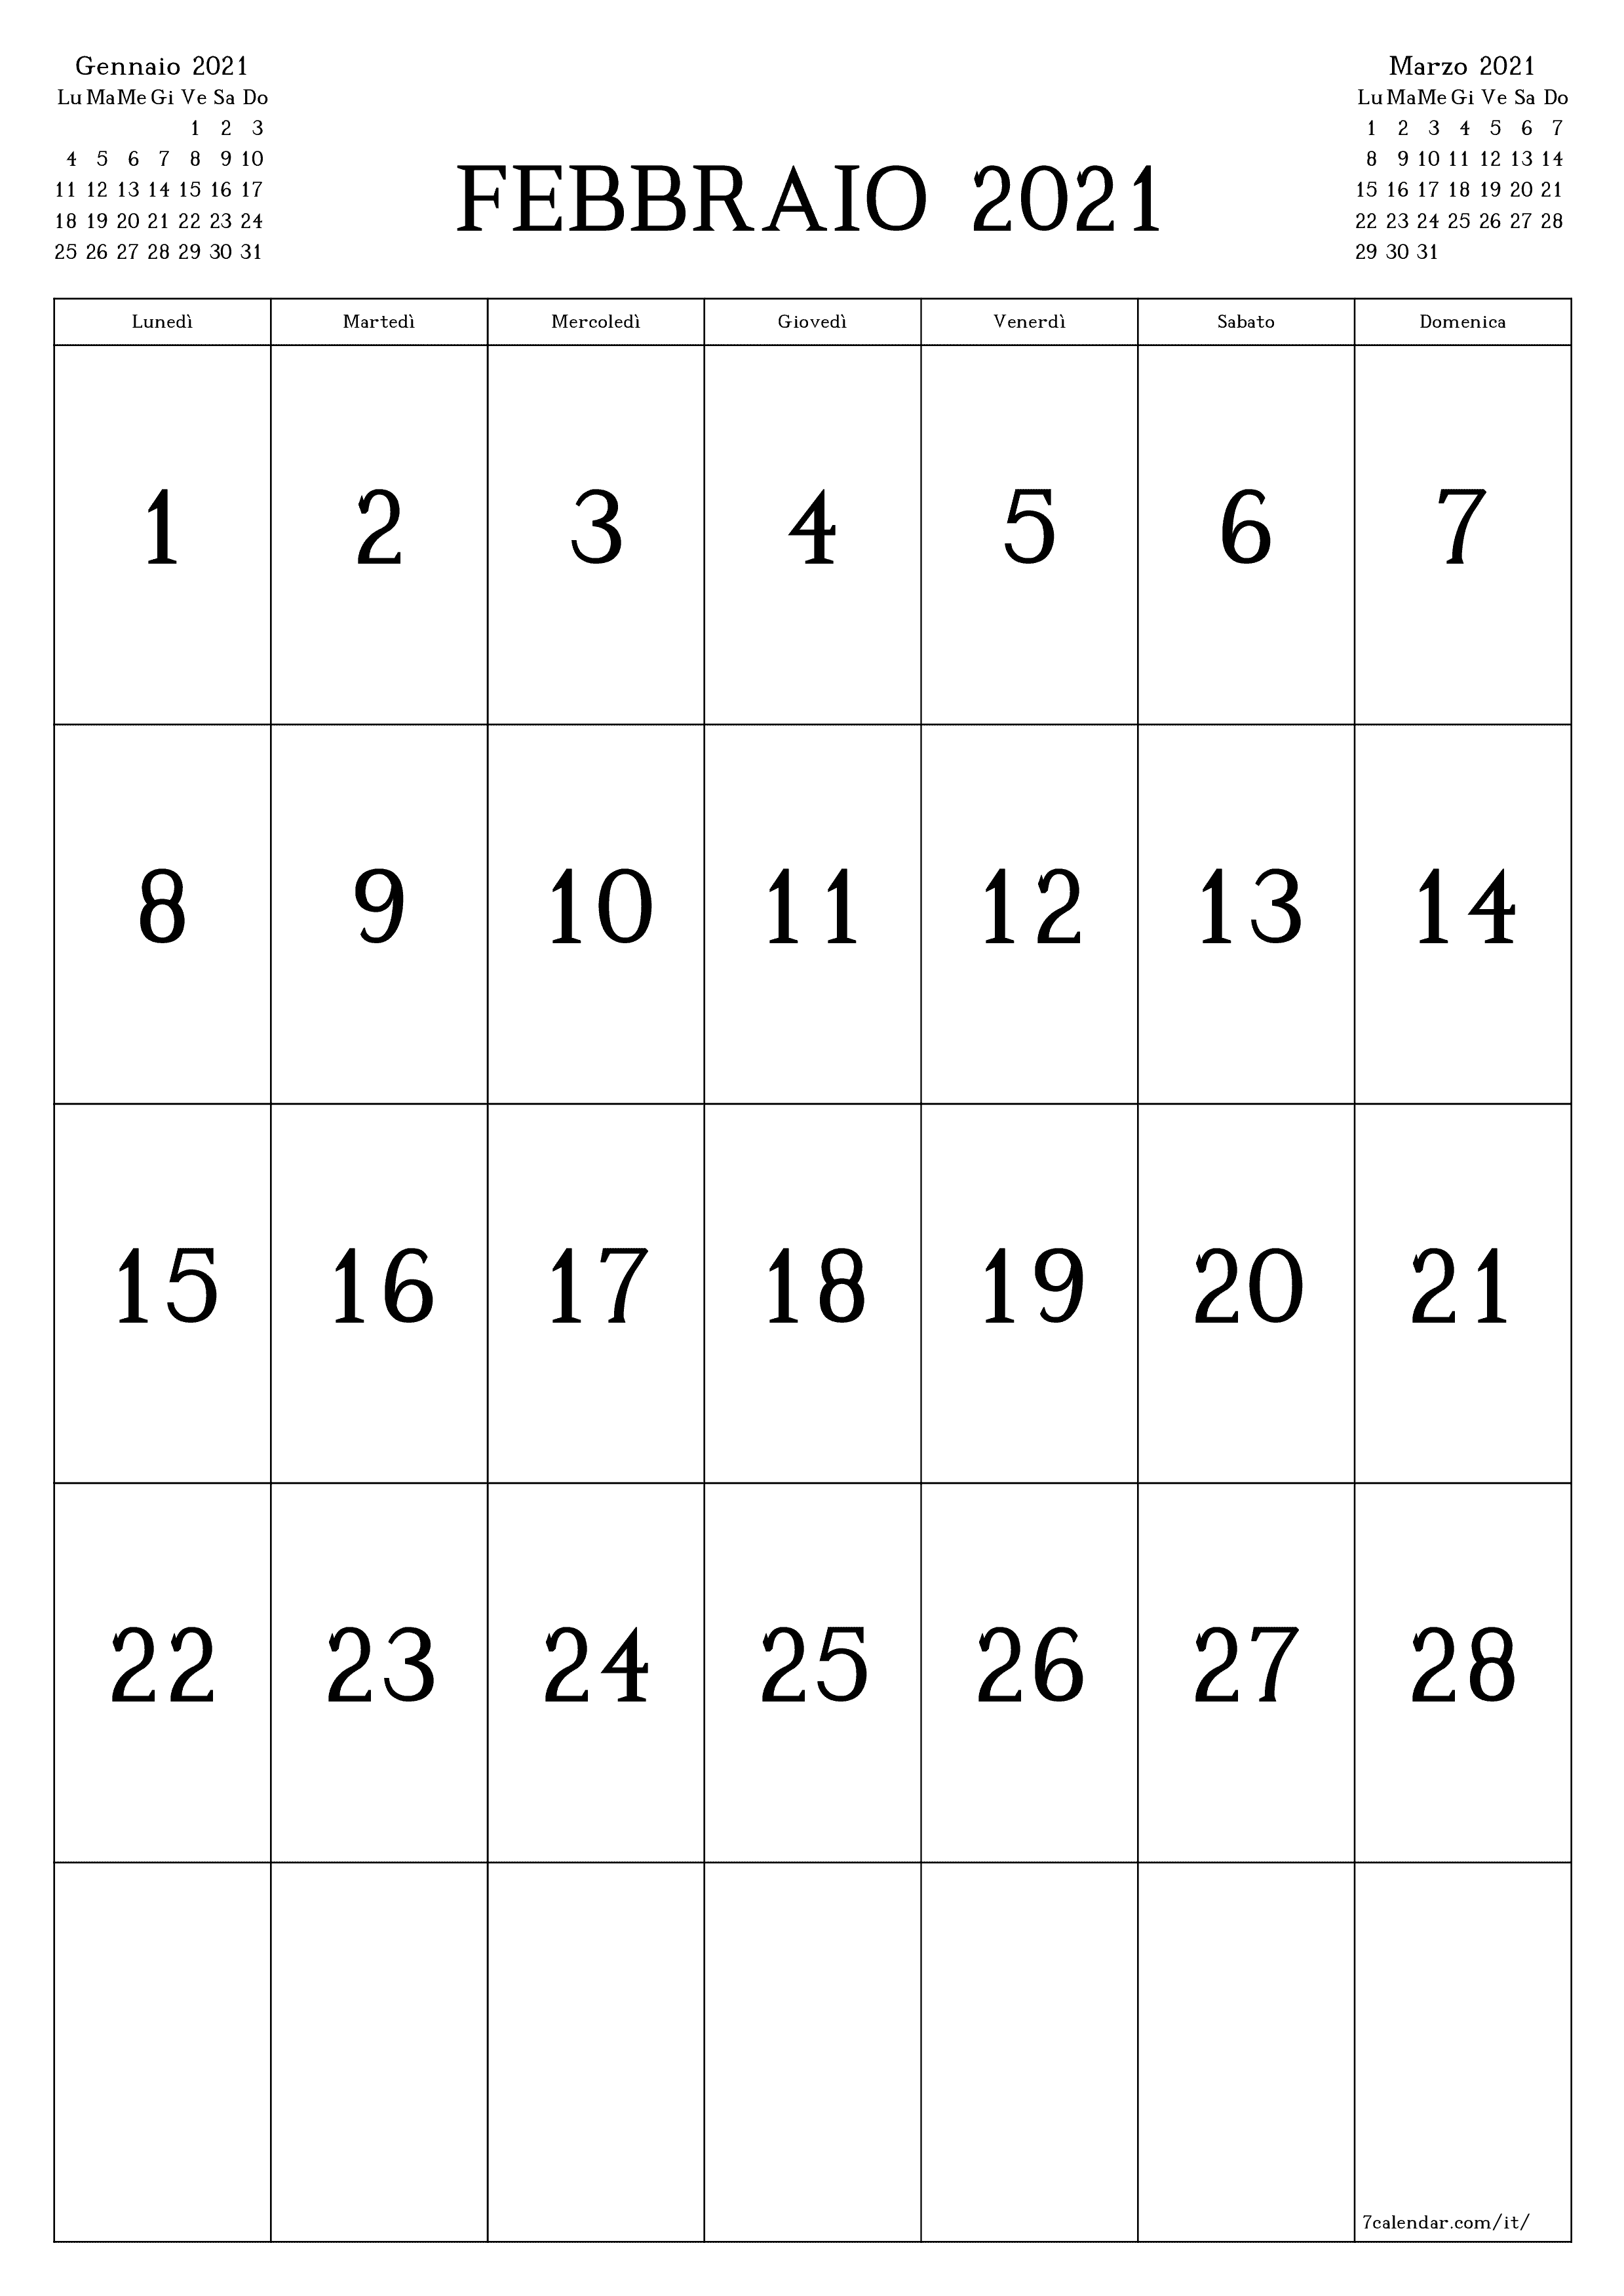 Calendario mensile vuoto per il mese Febbraio 2021 salva e stampa in PDF PNG Italian - 7calendar.com